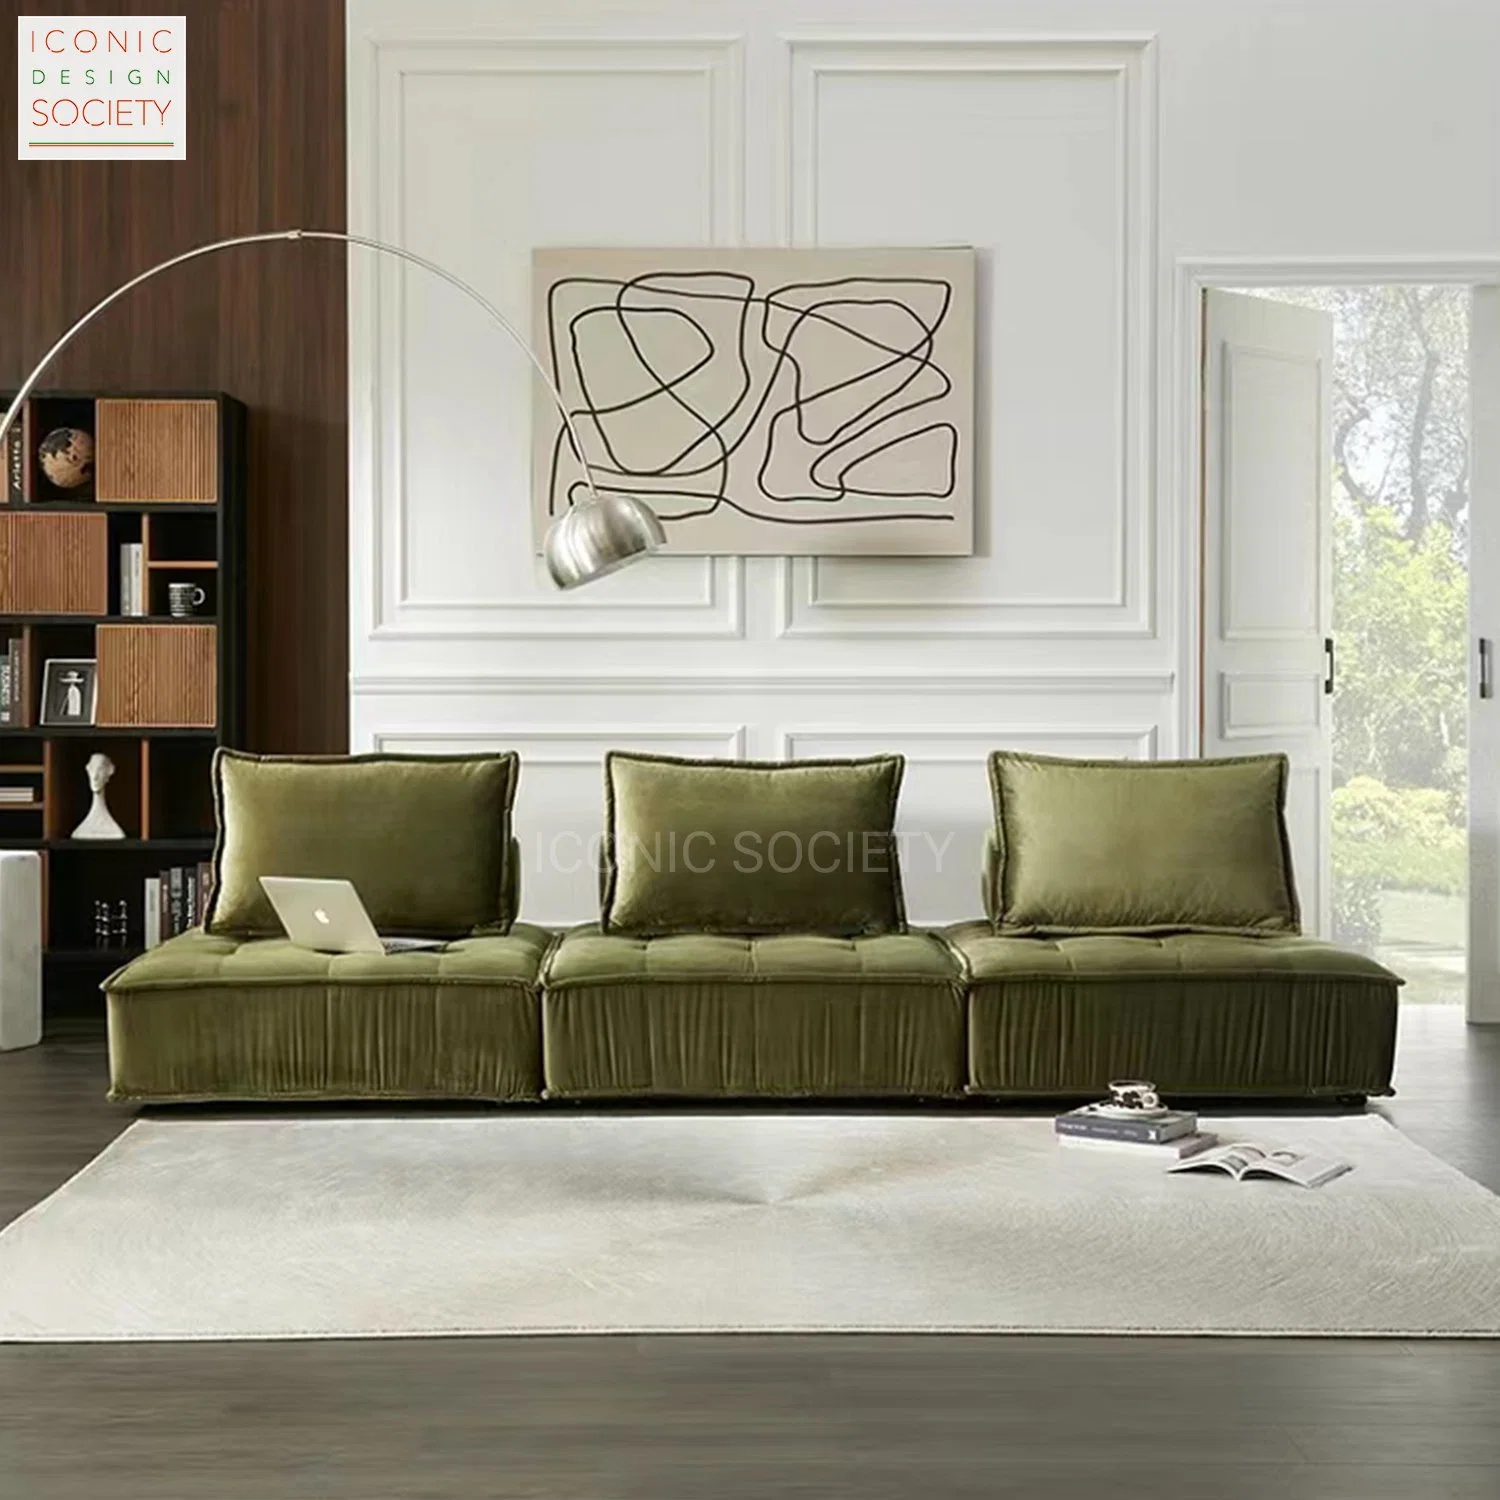 Modern Home гостиную мебелью с откидной спинкой сиденья для отдыхающих диван Ткань зеленая диван,